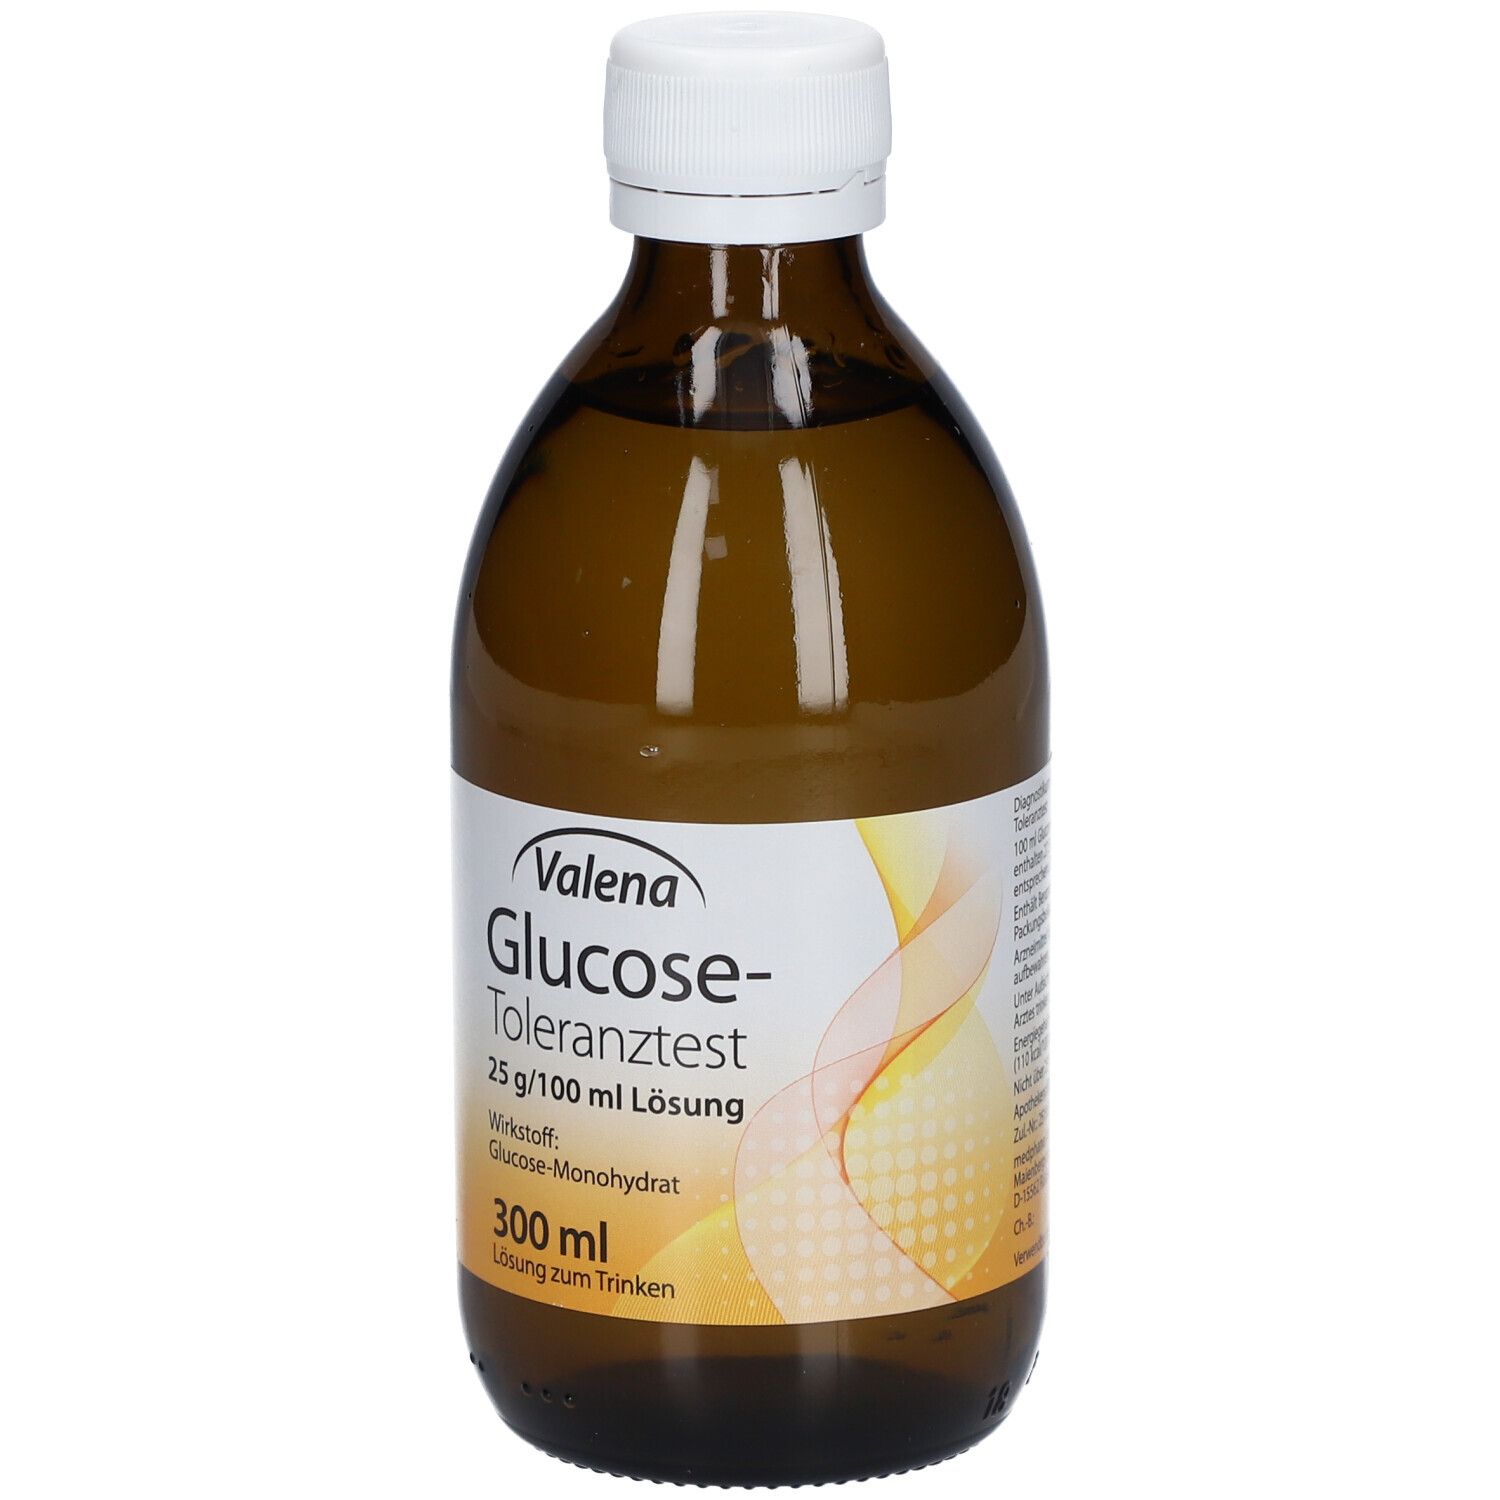 Valena Glucose Toleranztest 25 g/100 ml